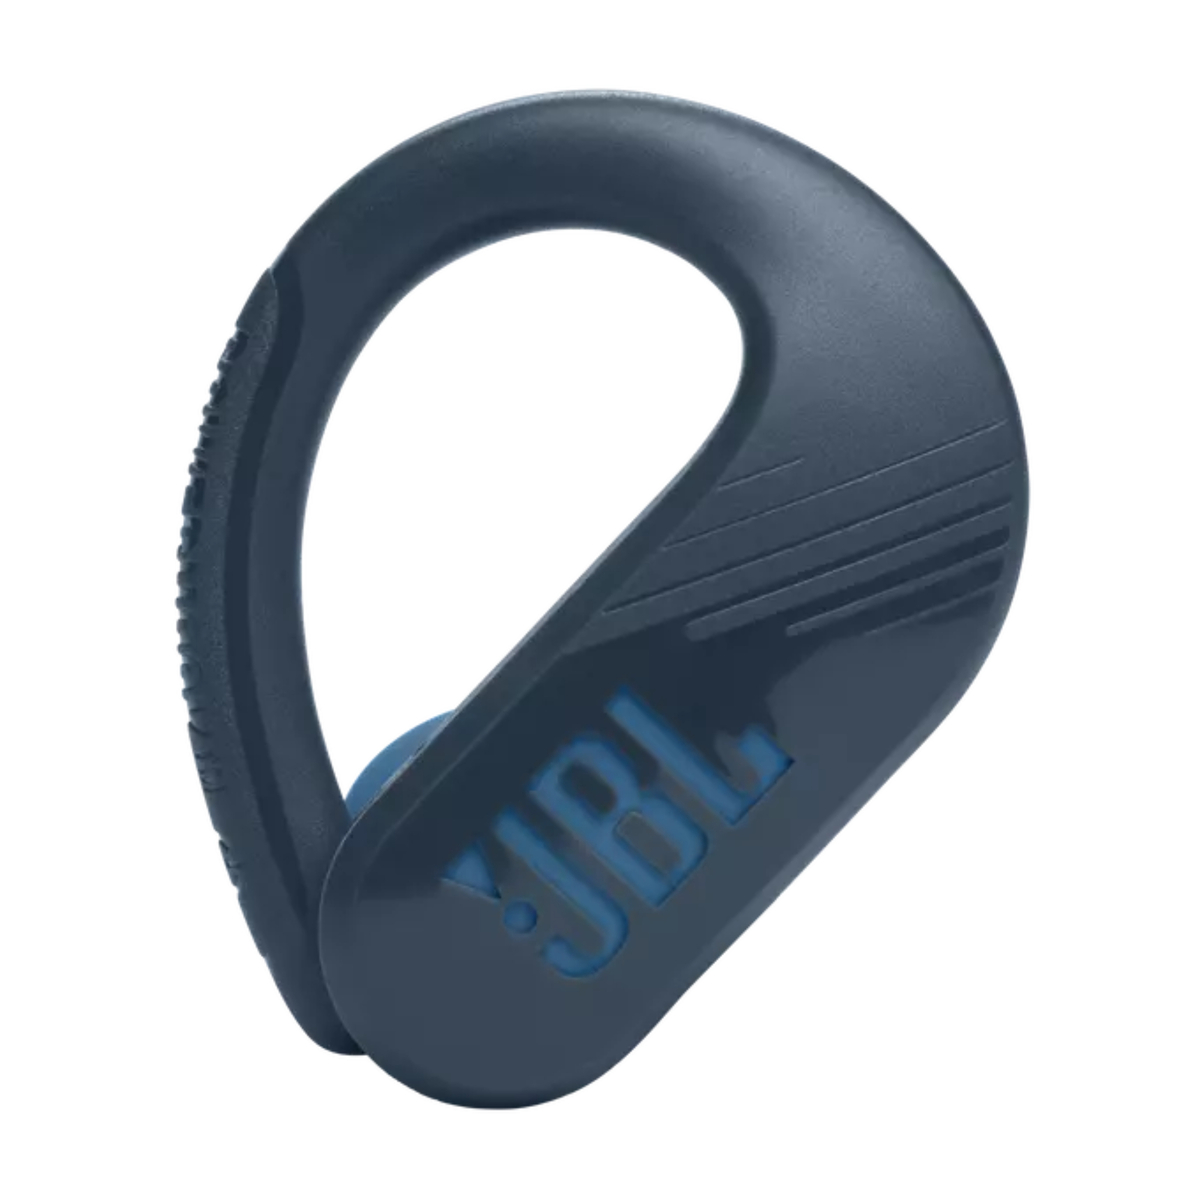 JBL - Endurance Peak 3 Dust and Waterproof True Wireless Active Earbuds -  Black